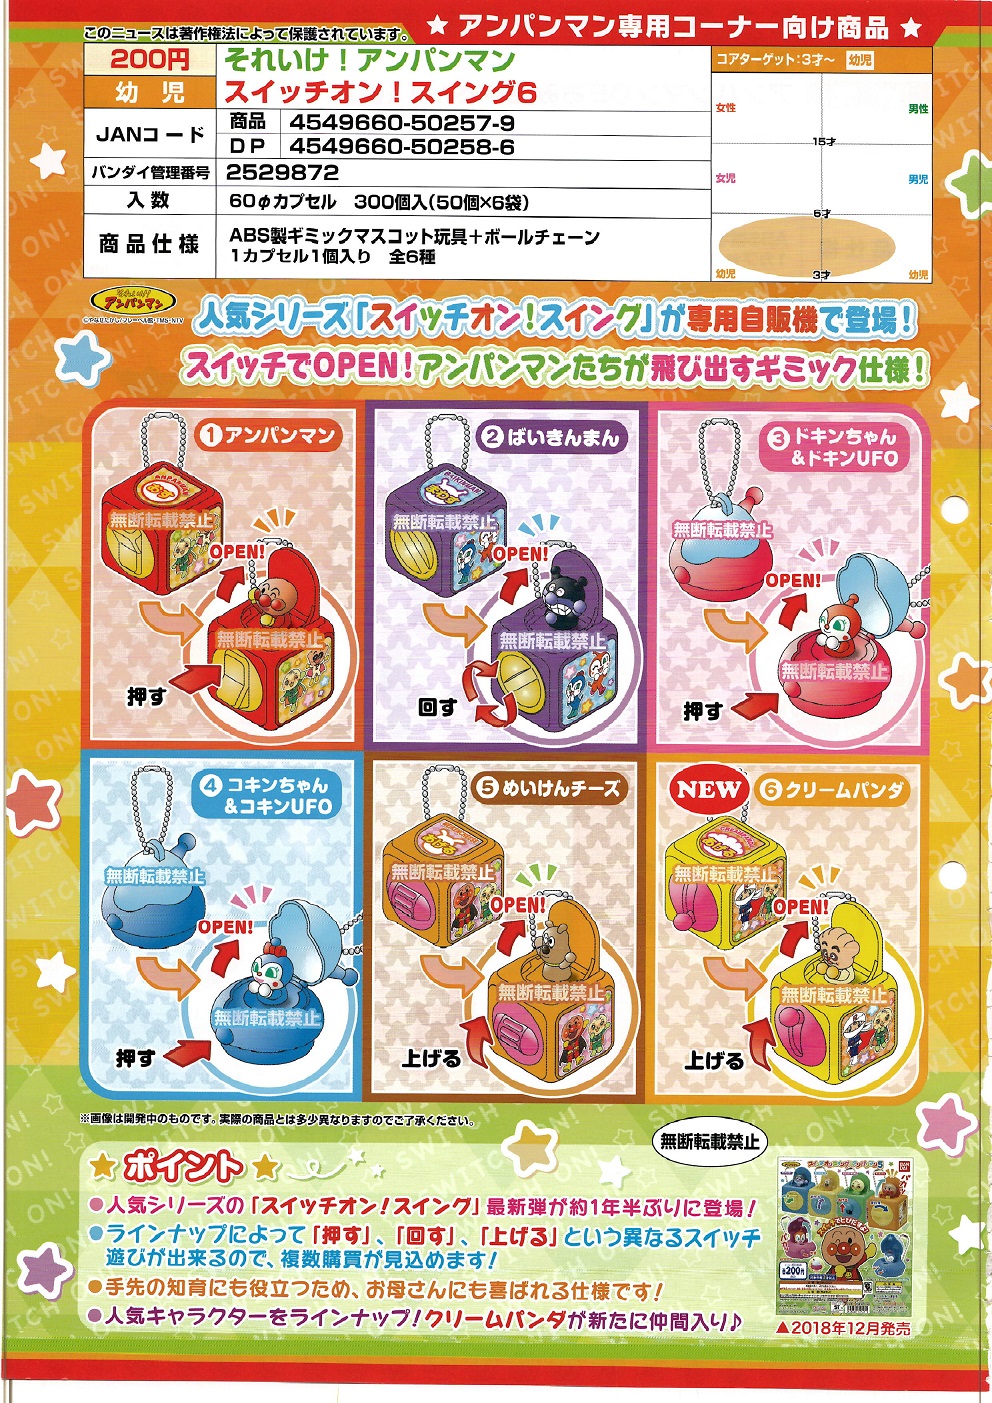 【A】200日元扭蛋 面包超人 机关小玩具挂件 第6弹 全6种 (1袋50个) 502579